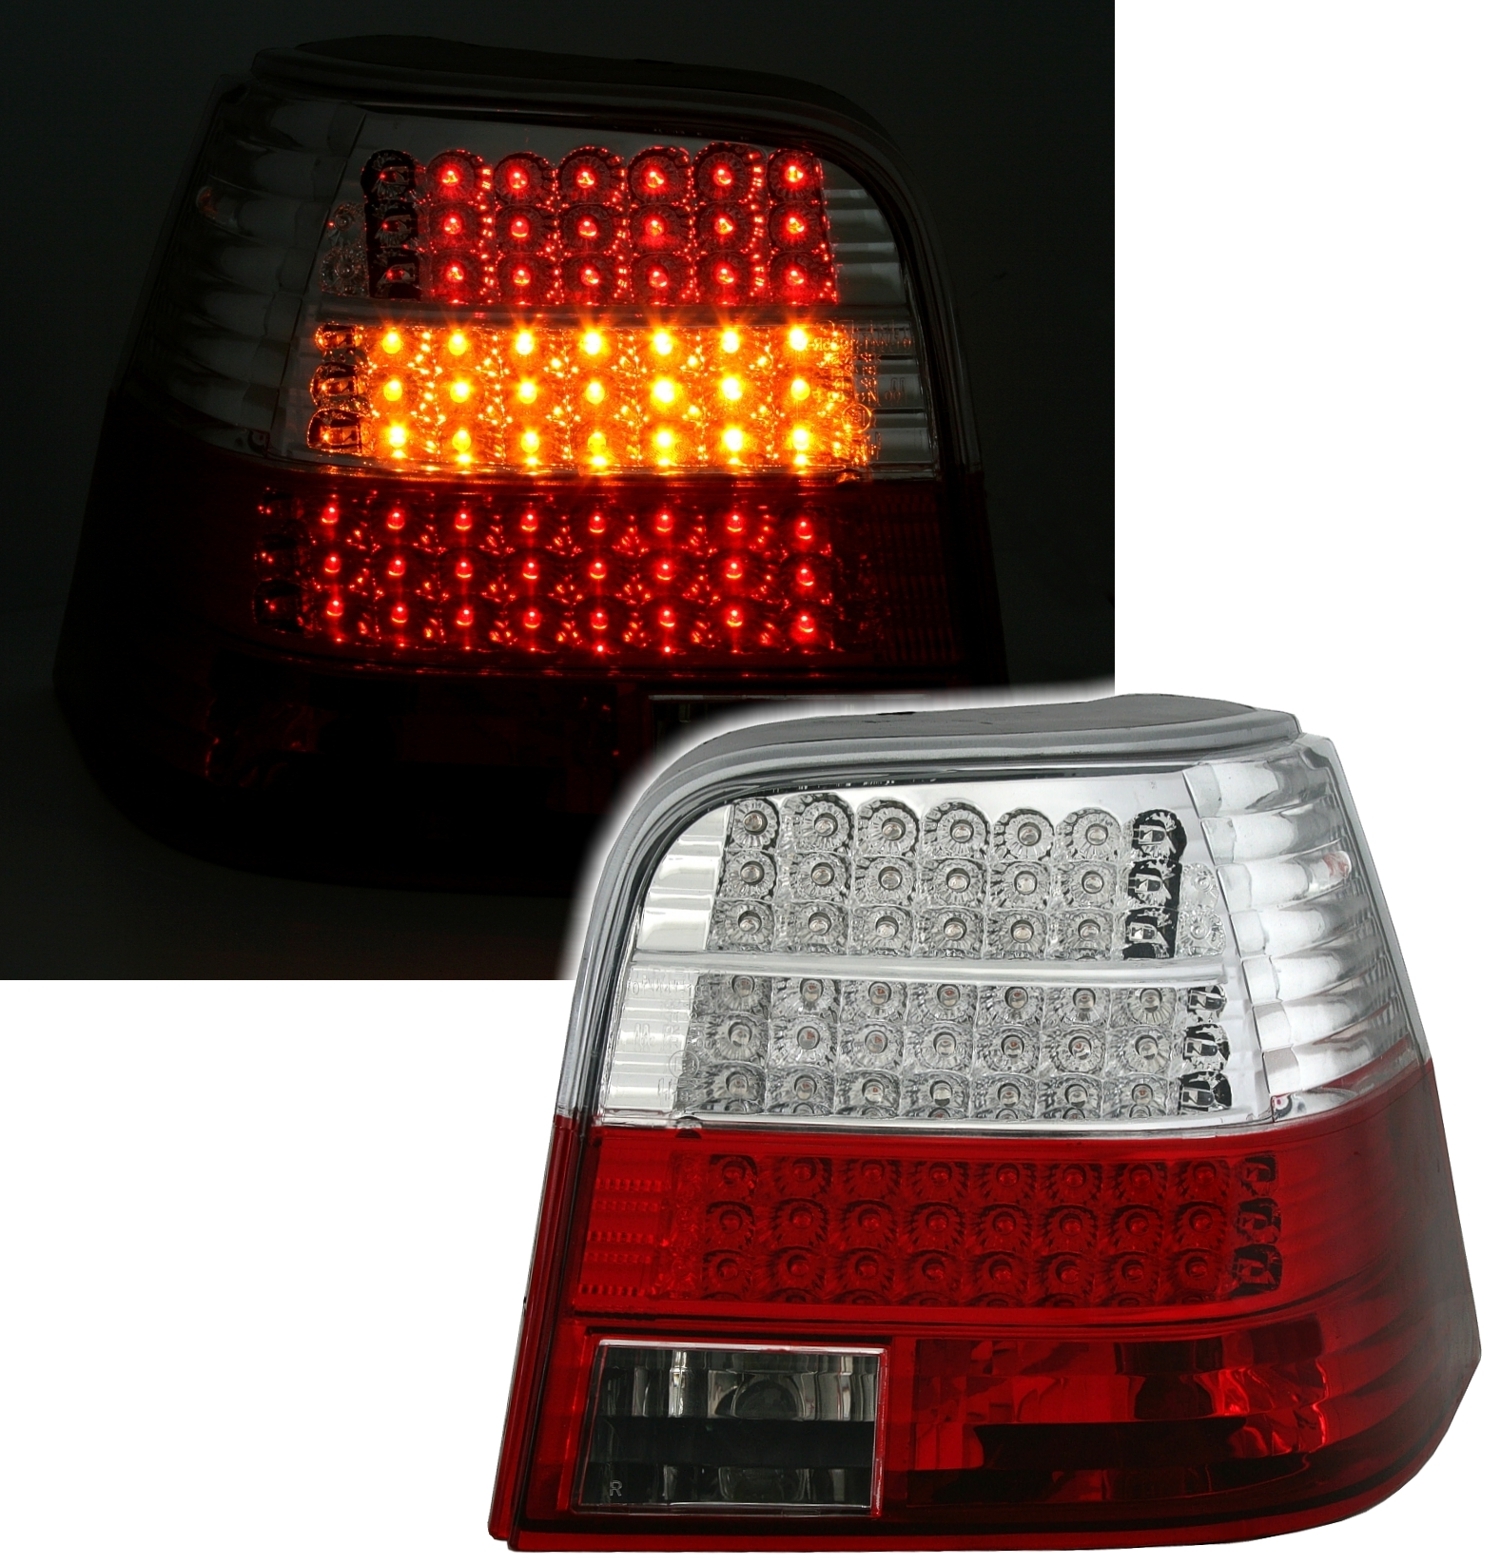 LED Rückleuchten Set für VW Golf 4 in Rot-Weiß